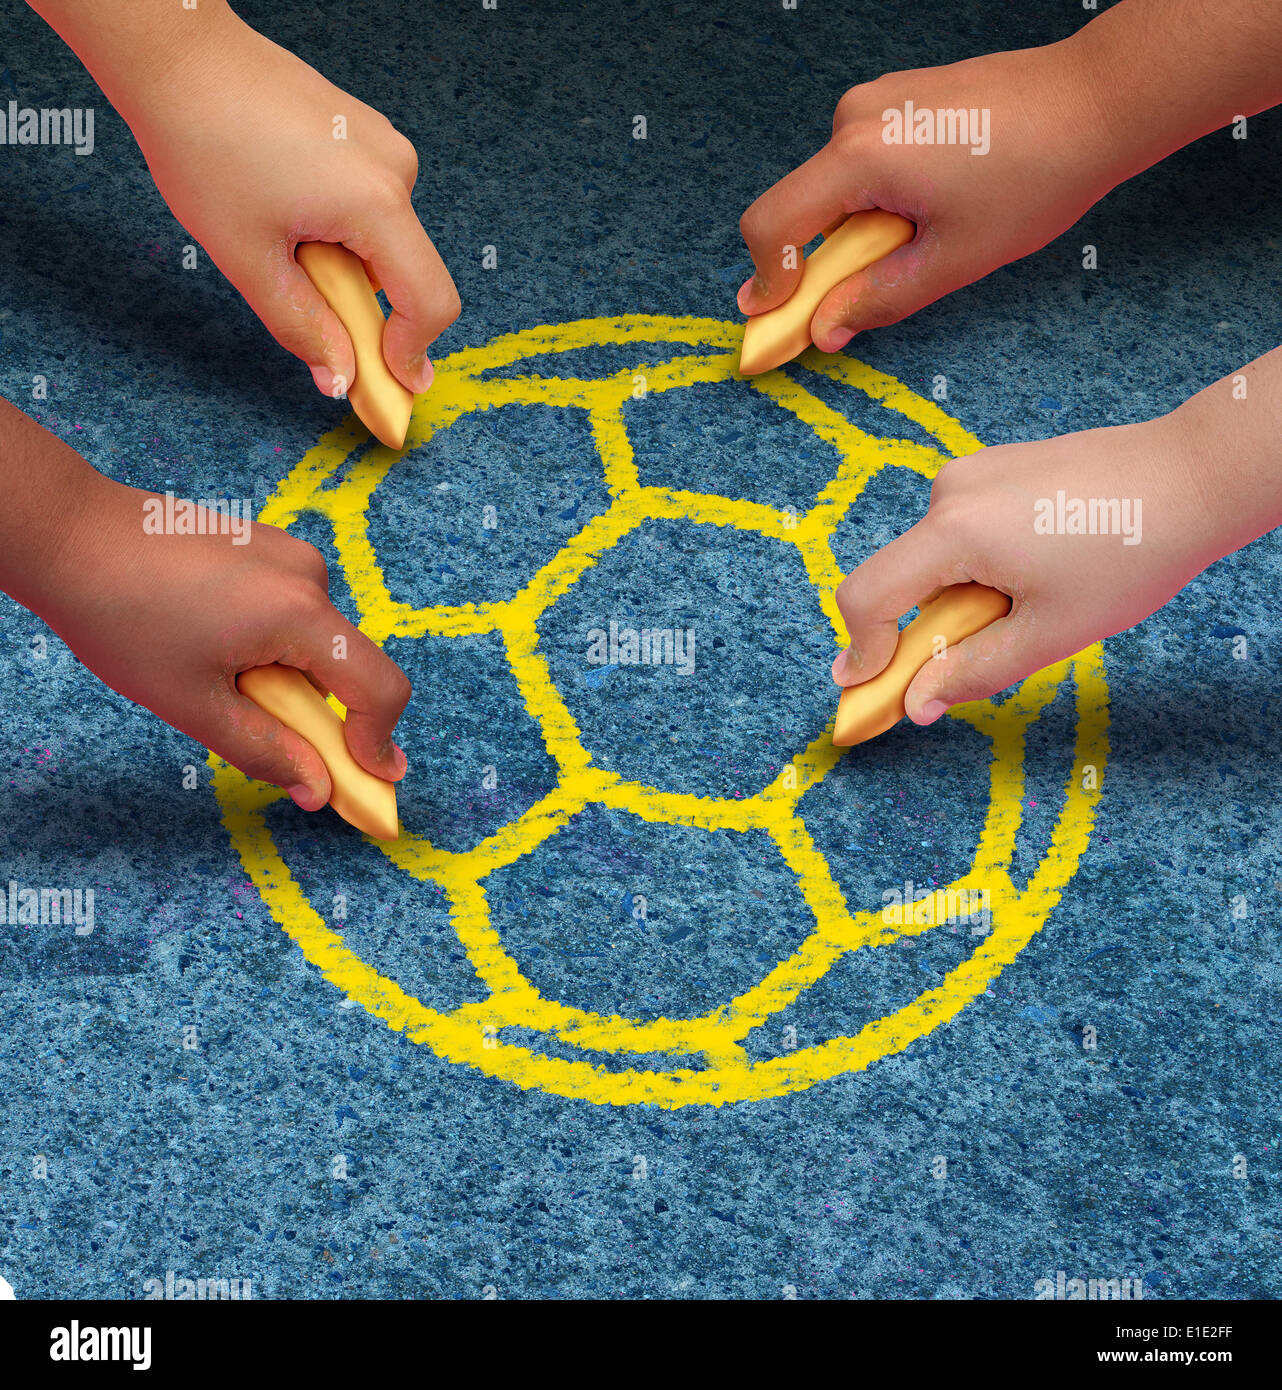 Comunità il concetto di calcio come un gruppo di mani che rappresentano i gruppi etnici di giovani provenienti da molte nazioni del mondo tenendo chalk co Foto Stock